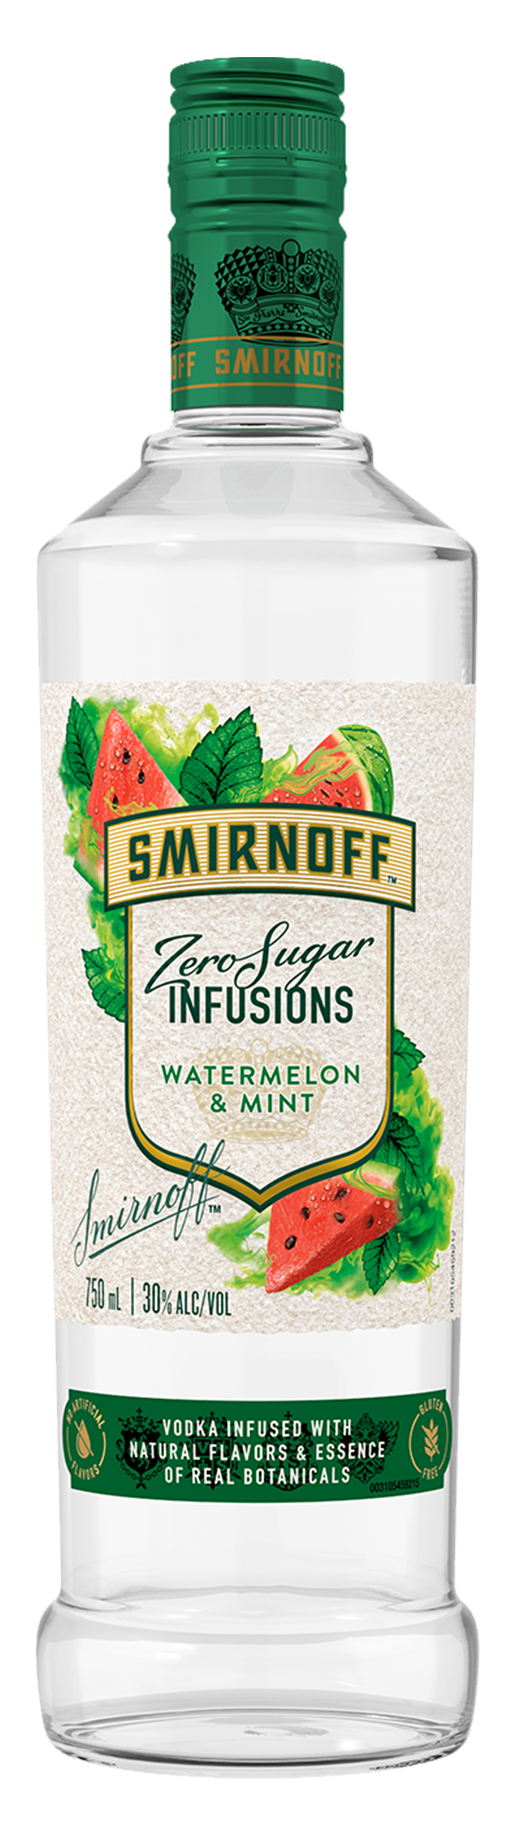 Smirnoff Vodka Watermelon & Mint 750ml